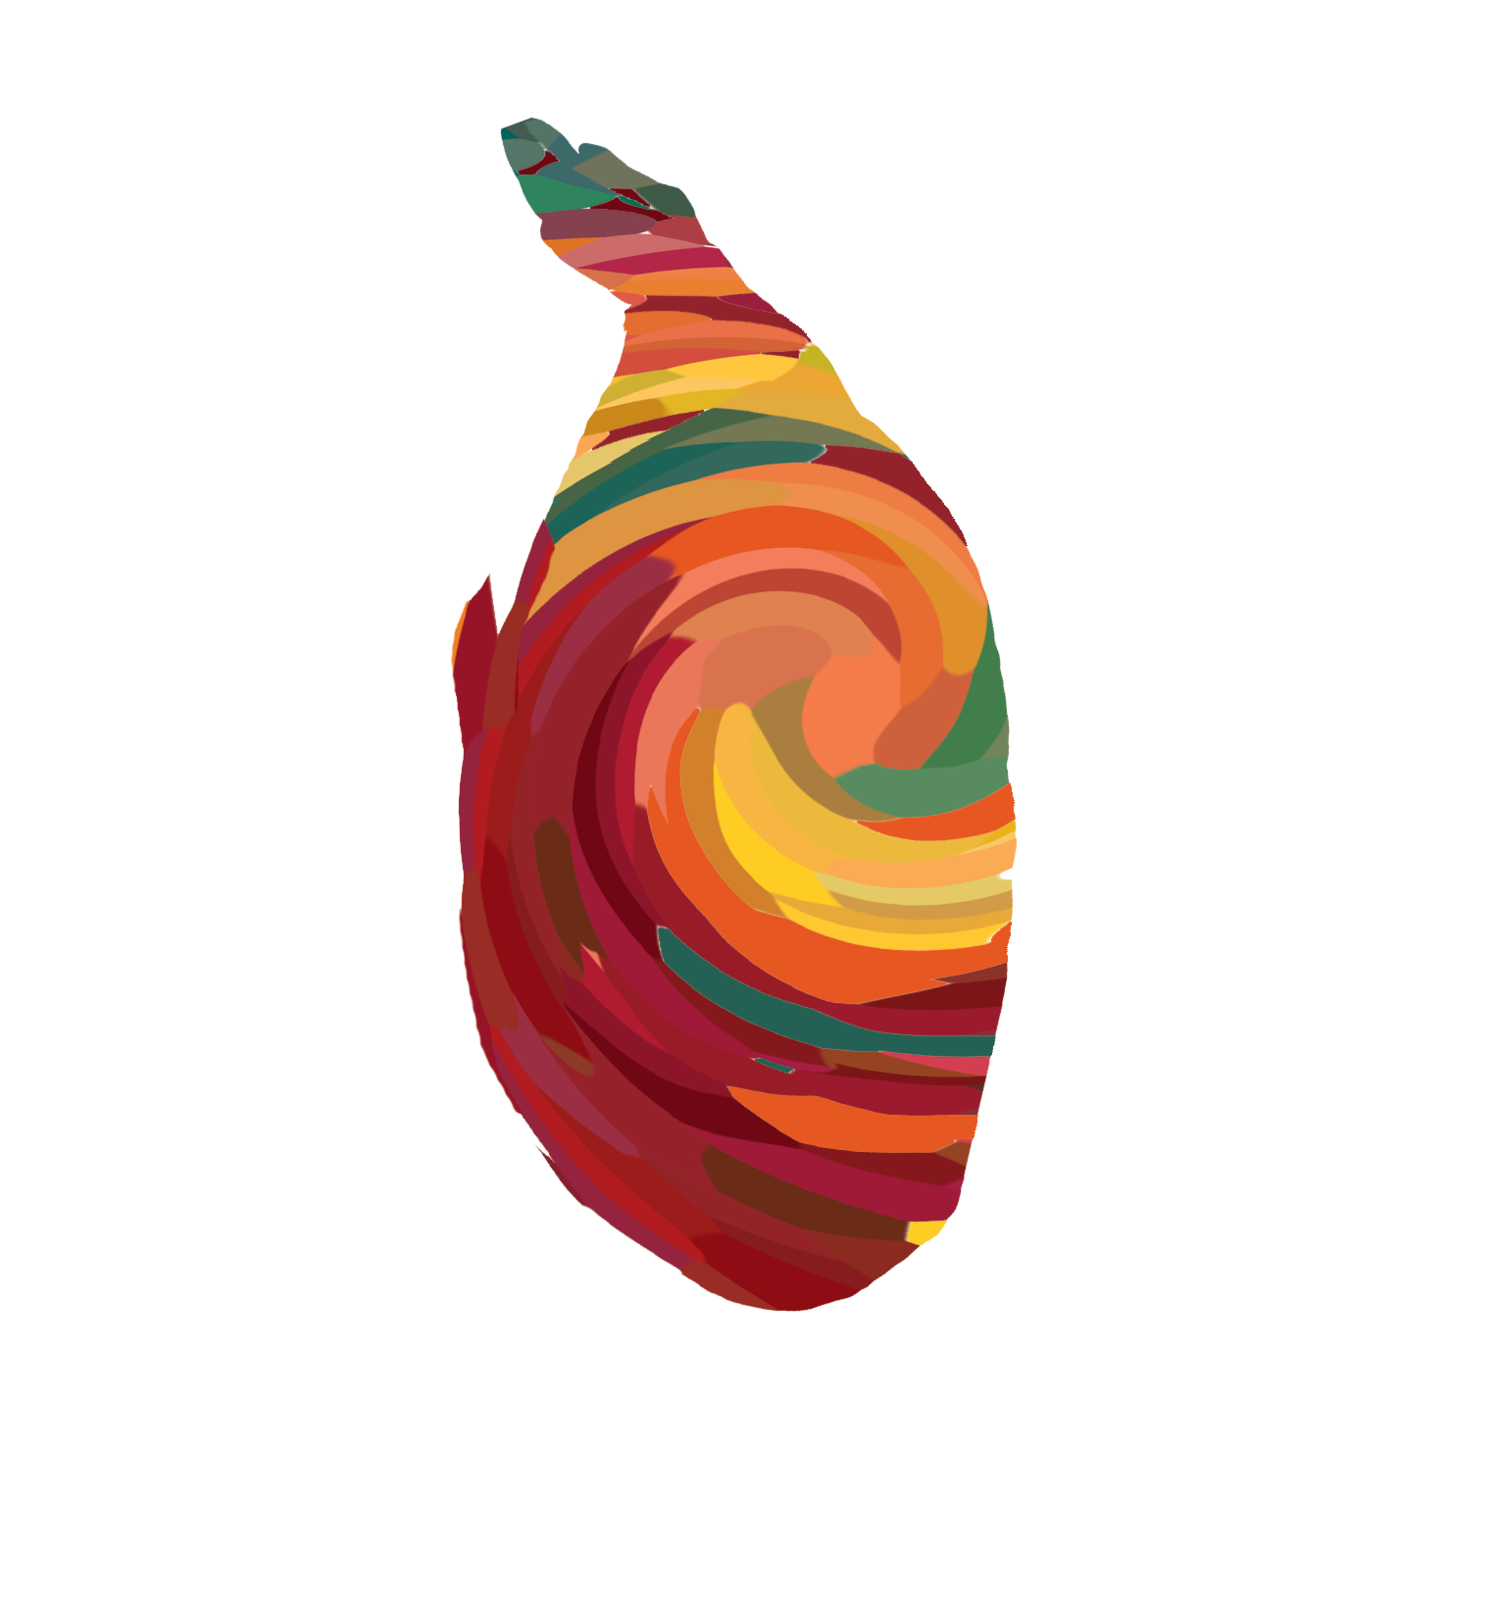 Lankan Fest 